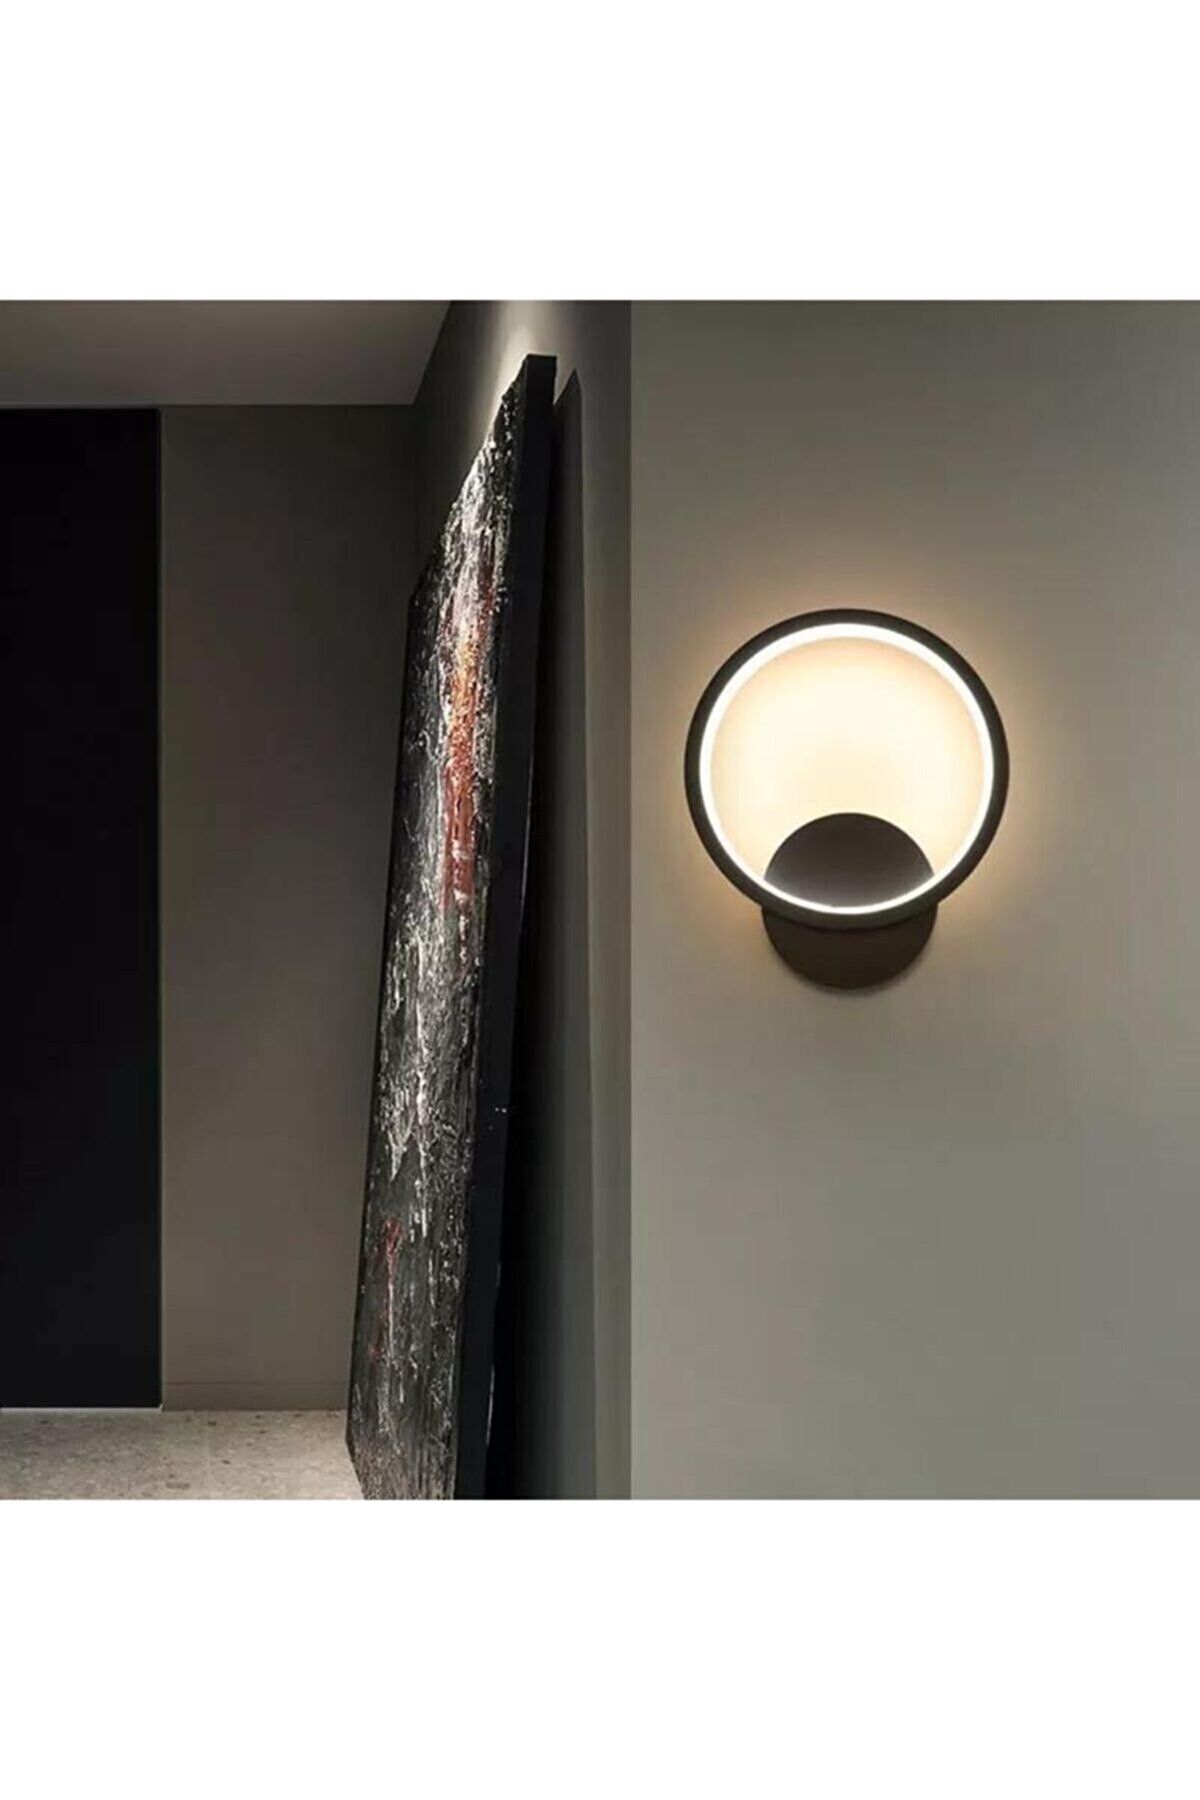 Fer Avize Polina Modern Tasarım Siyah Renk Gün Işığı Ledli Banyo - Mutfak - Salon Led Duvar Aplik